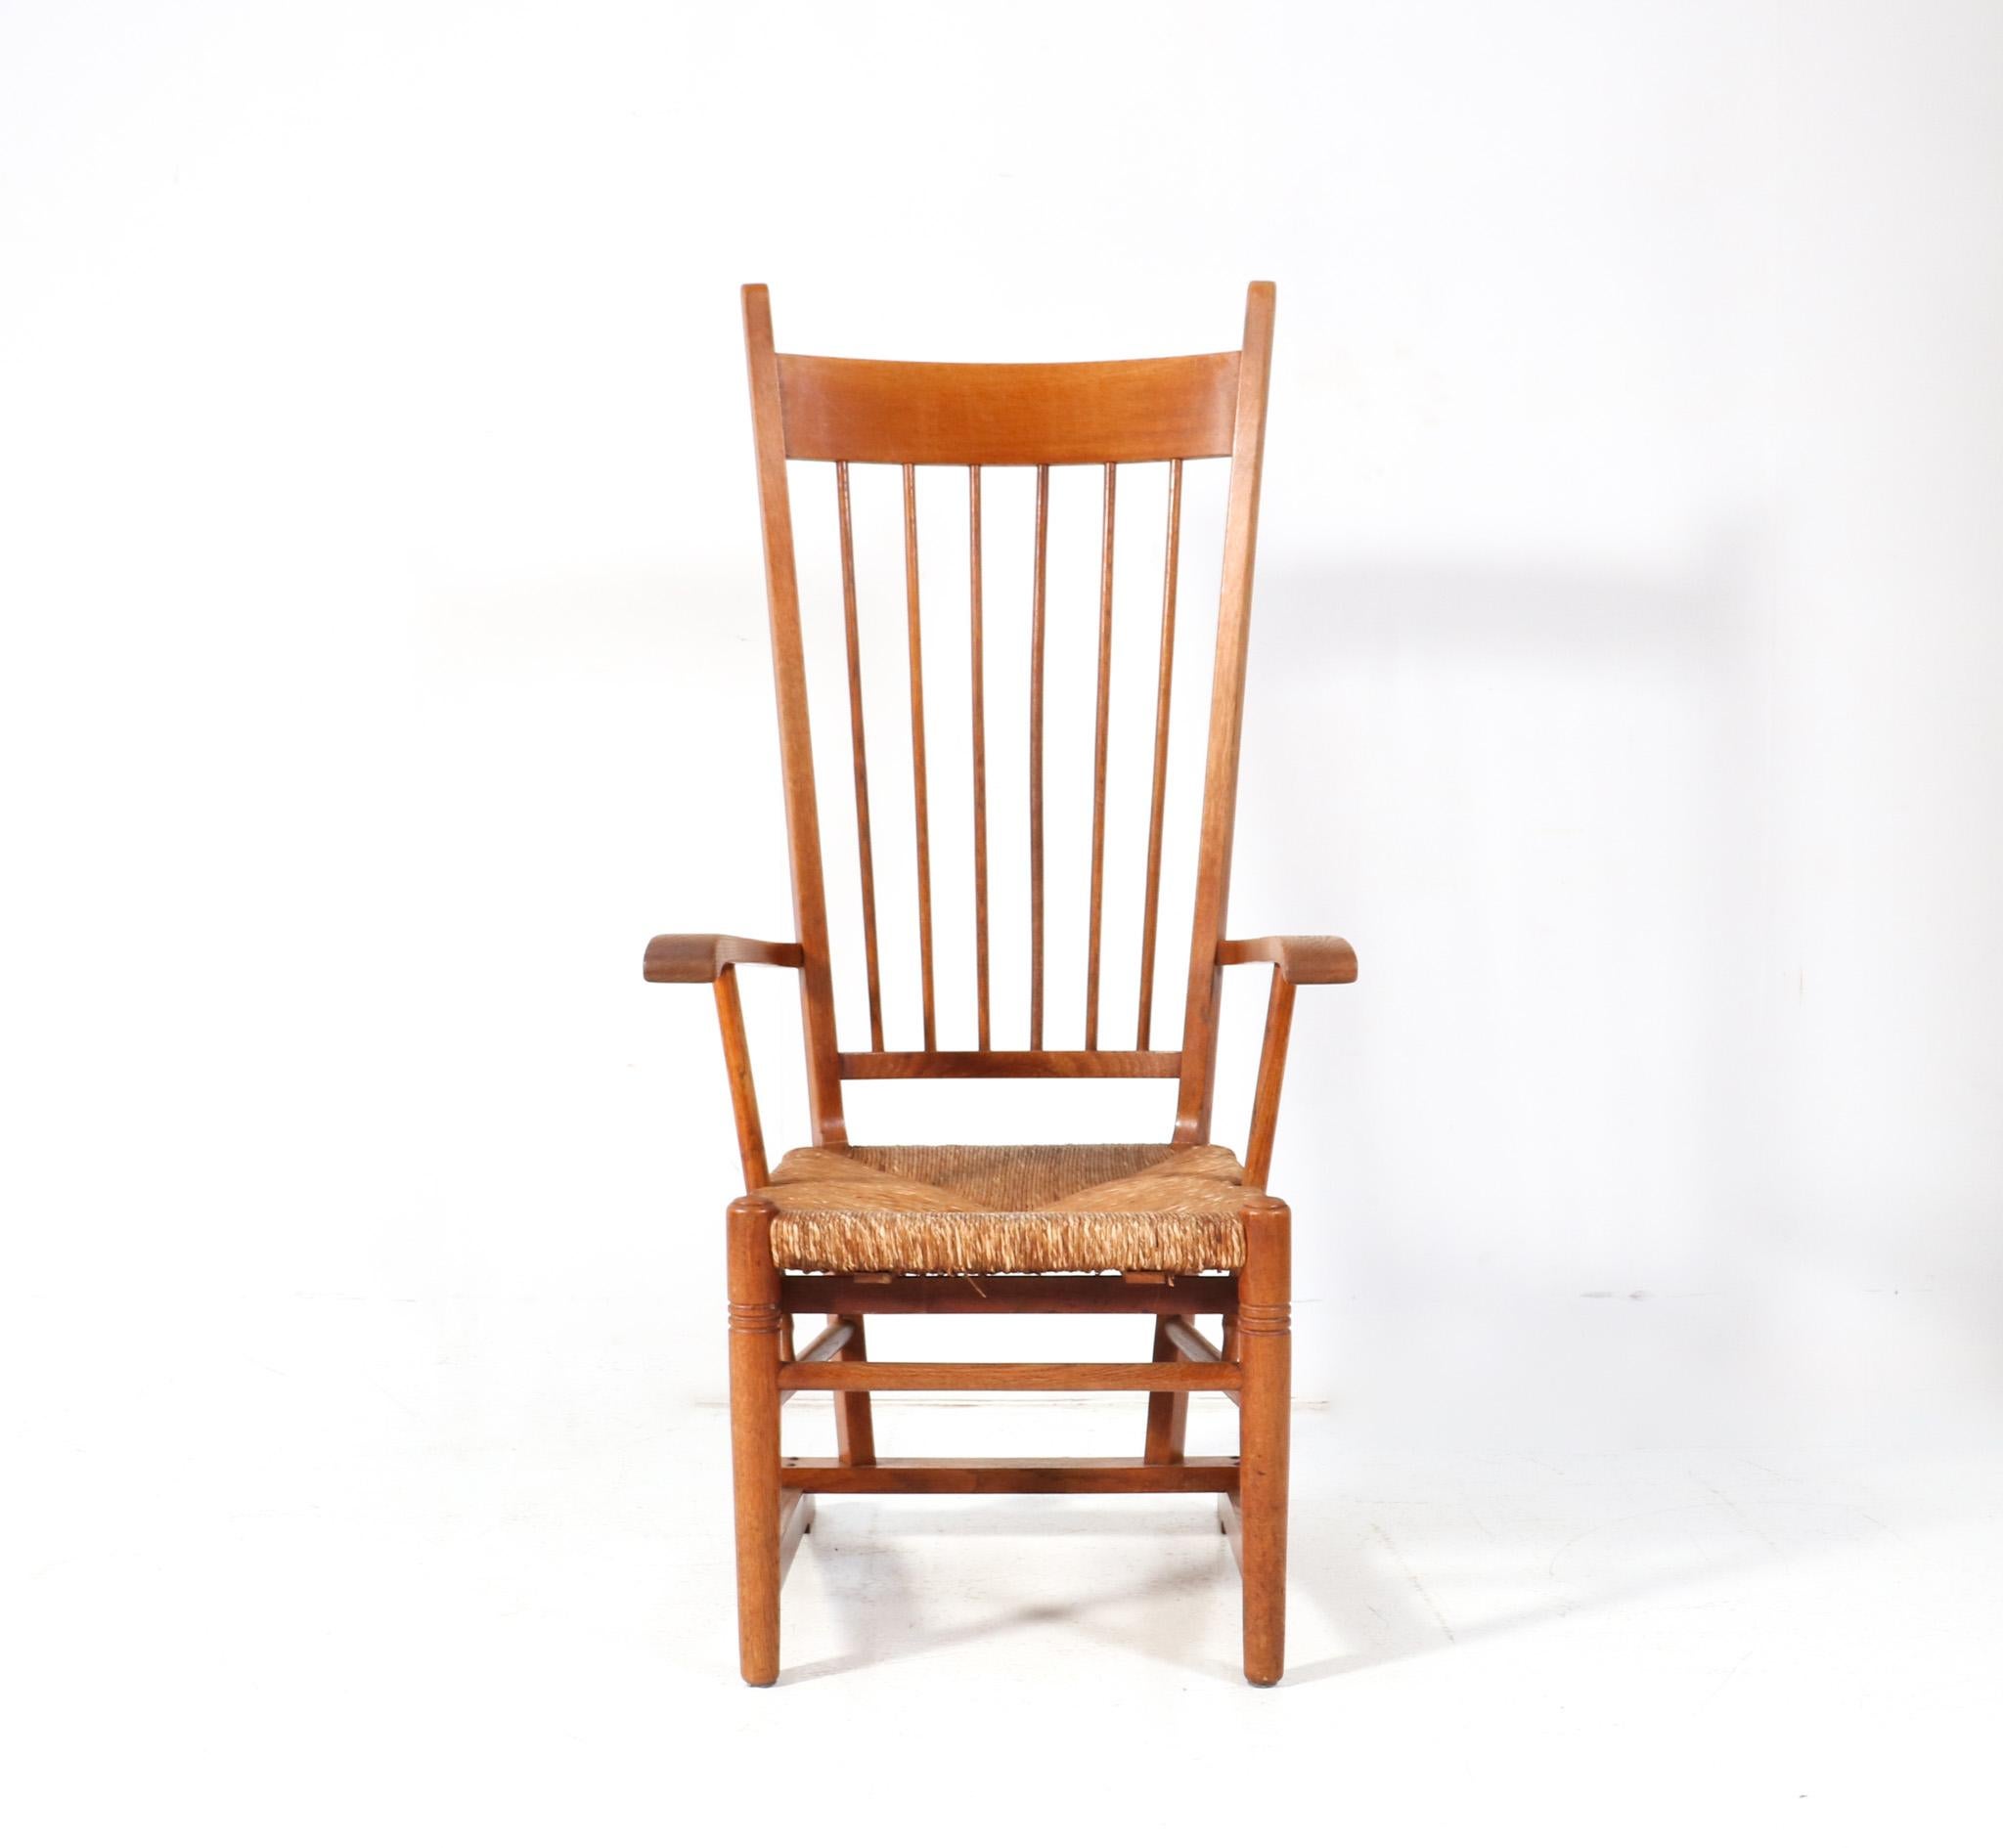 Superbe et rare fauteuil à haut dossier Arts & Crafts Art Nouveau.
Un design néerlandais saisissant des années 1900.
Cadre en chêne massif avec siège en jonc d'origine.
Dos haut bien dessiné et pattes arrière élégantes et élancées.
Ce magnifique